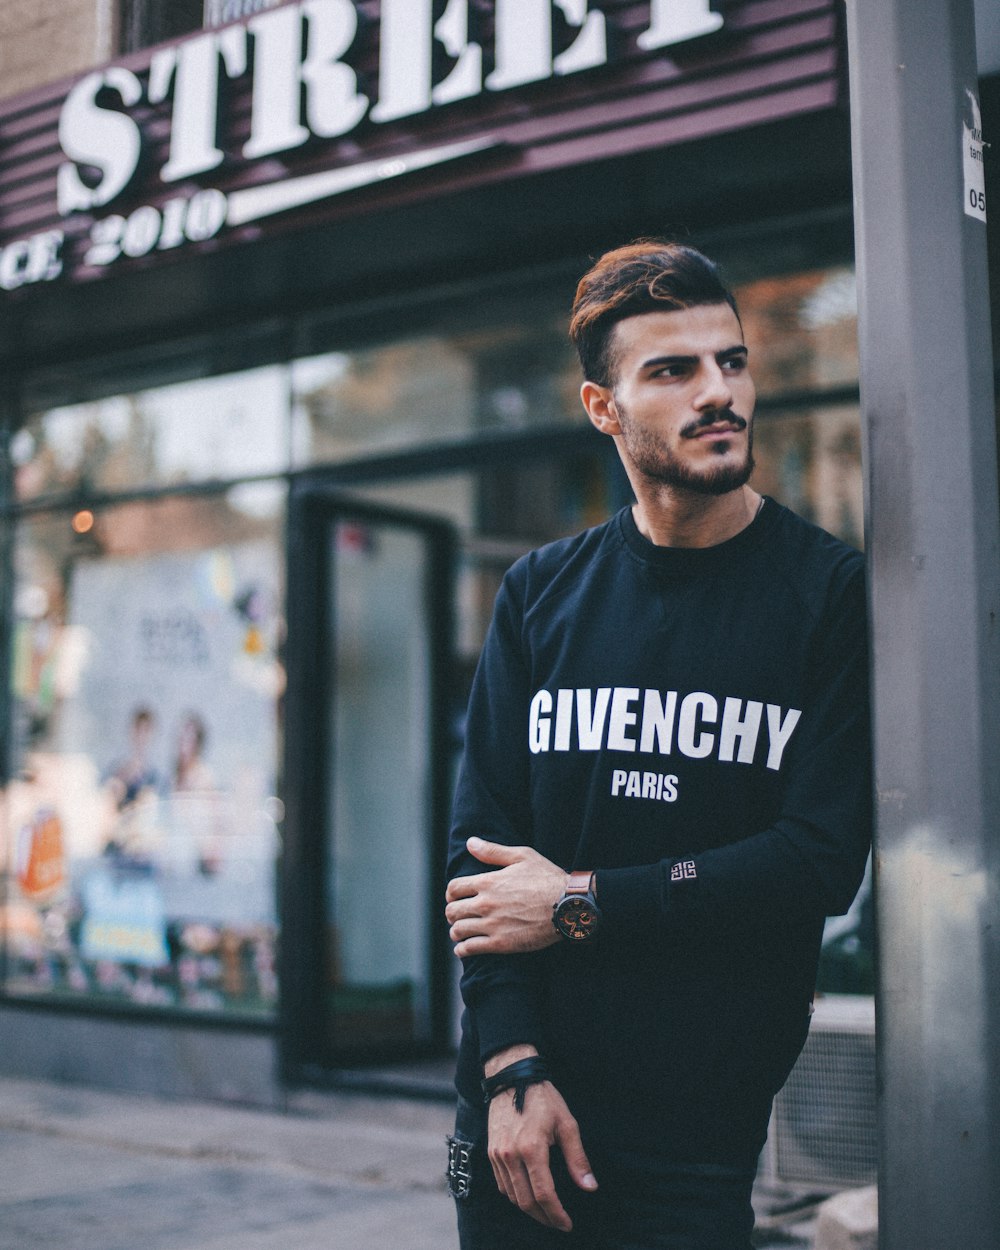 Mann im schwarzen Givenchy-Sweatshirt steht neben dem Pfosten vor dem Strek-Geschäft während der Tagesfotografie mit flachem Fokus